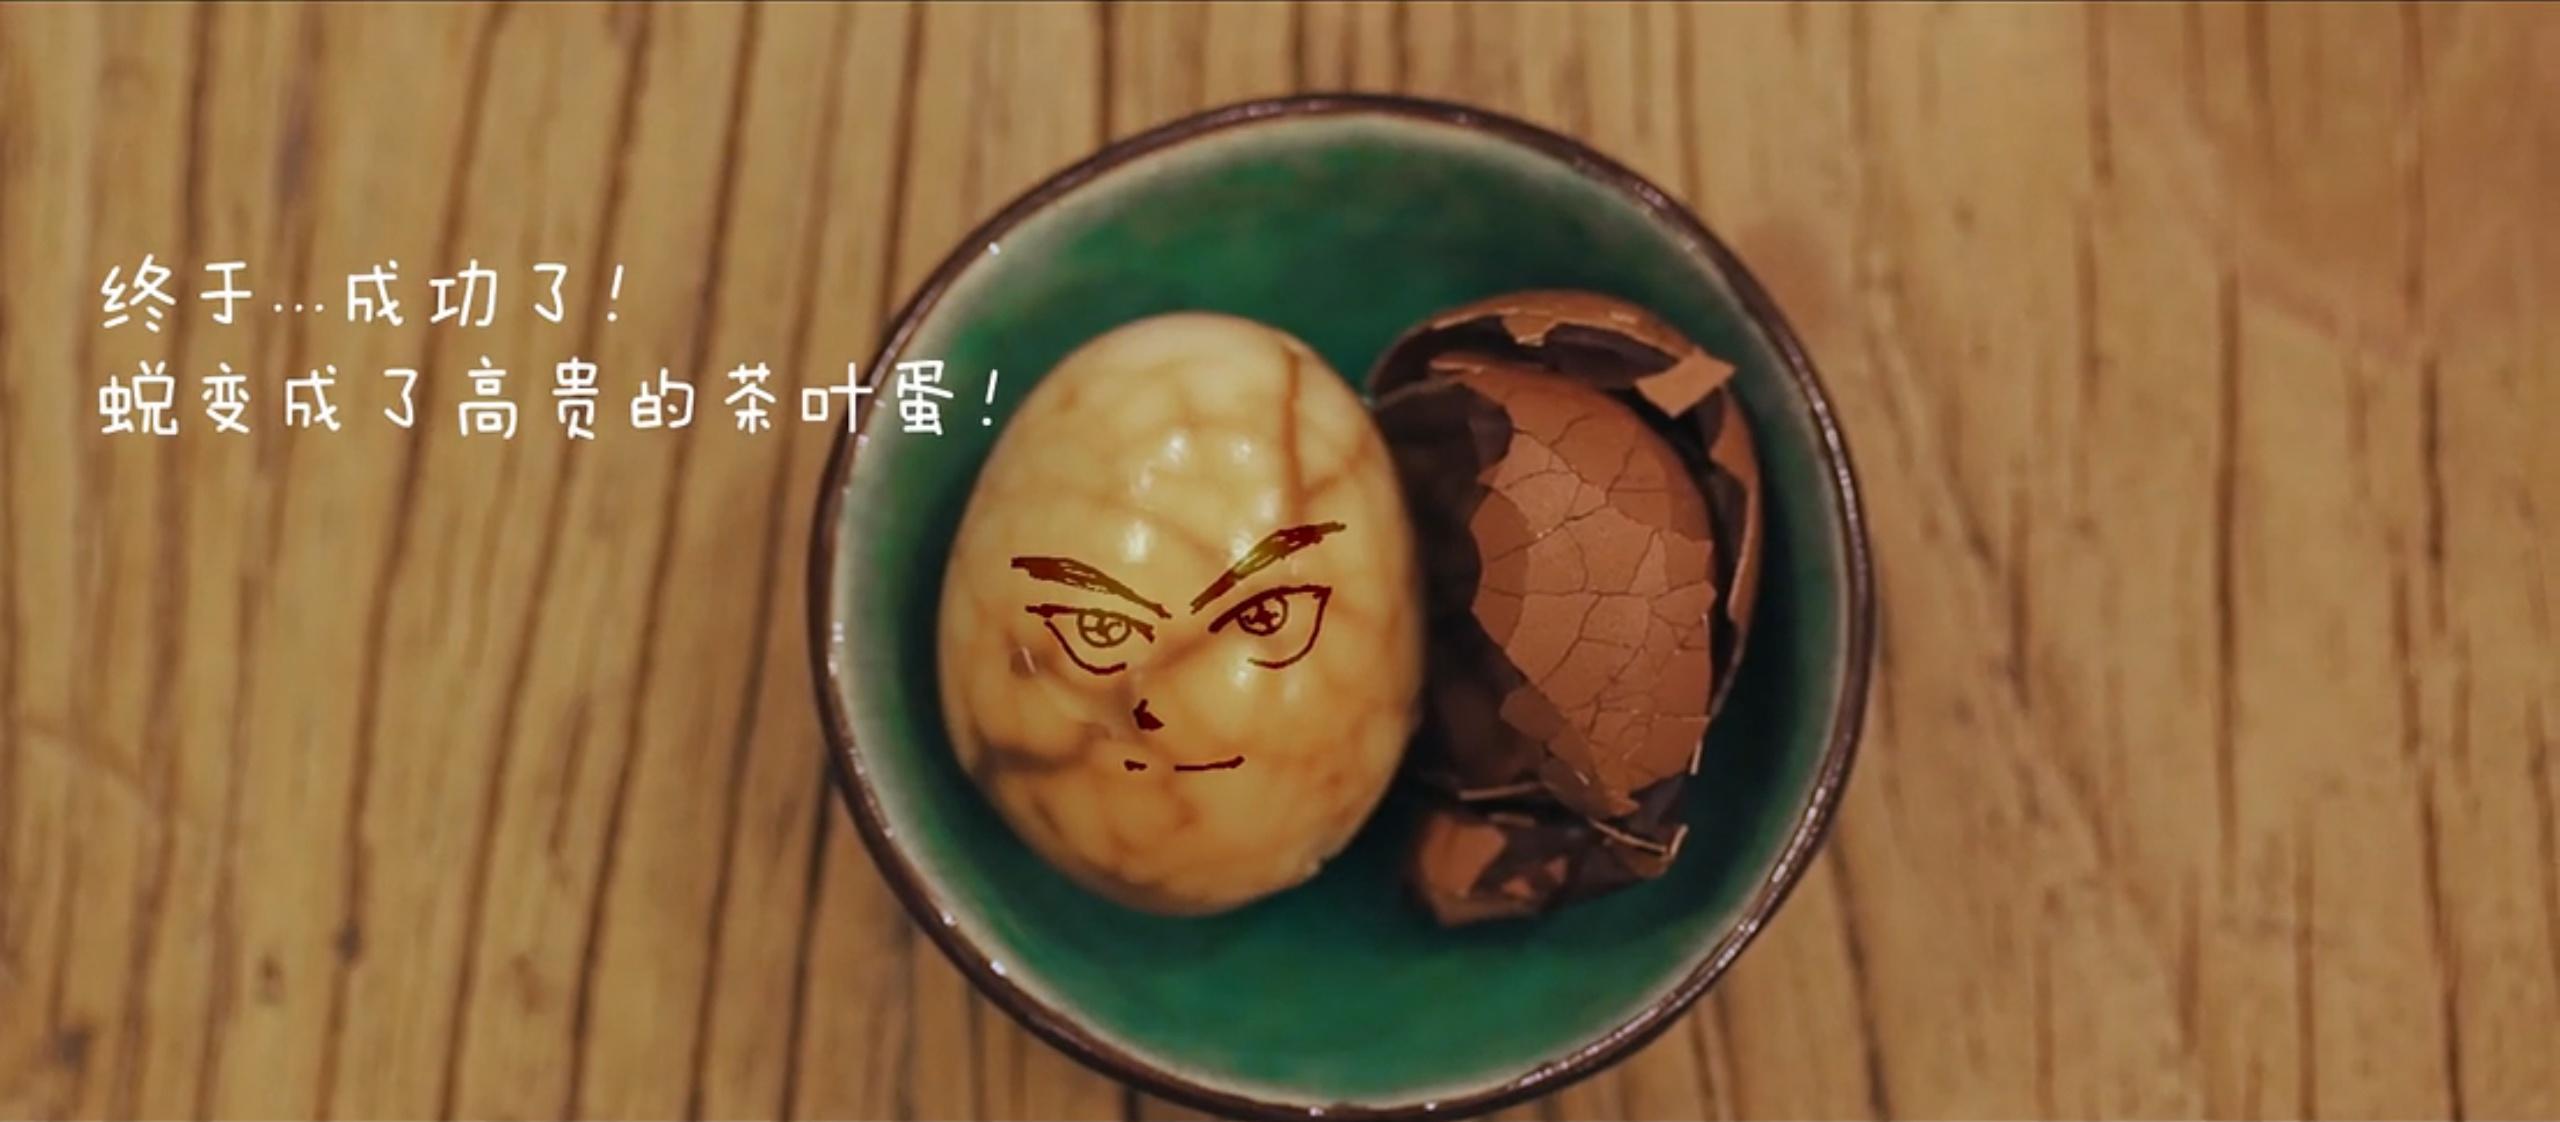 【日食记】番外篇 奢华的茶叶蛋